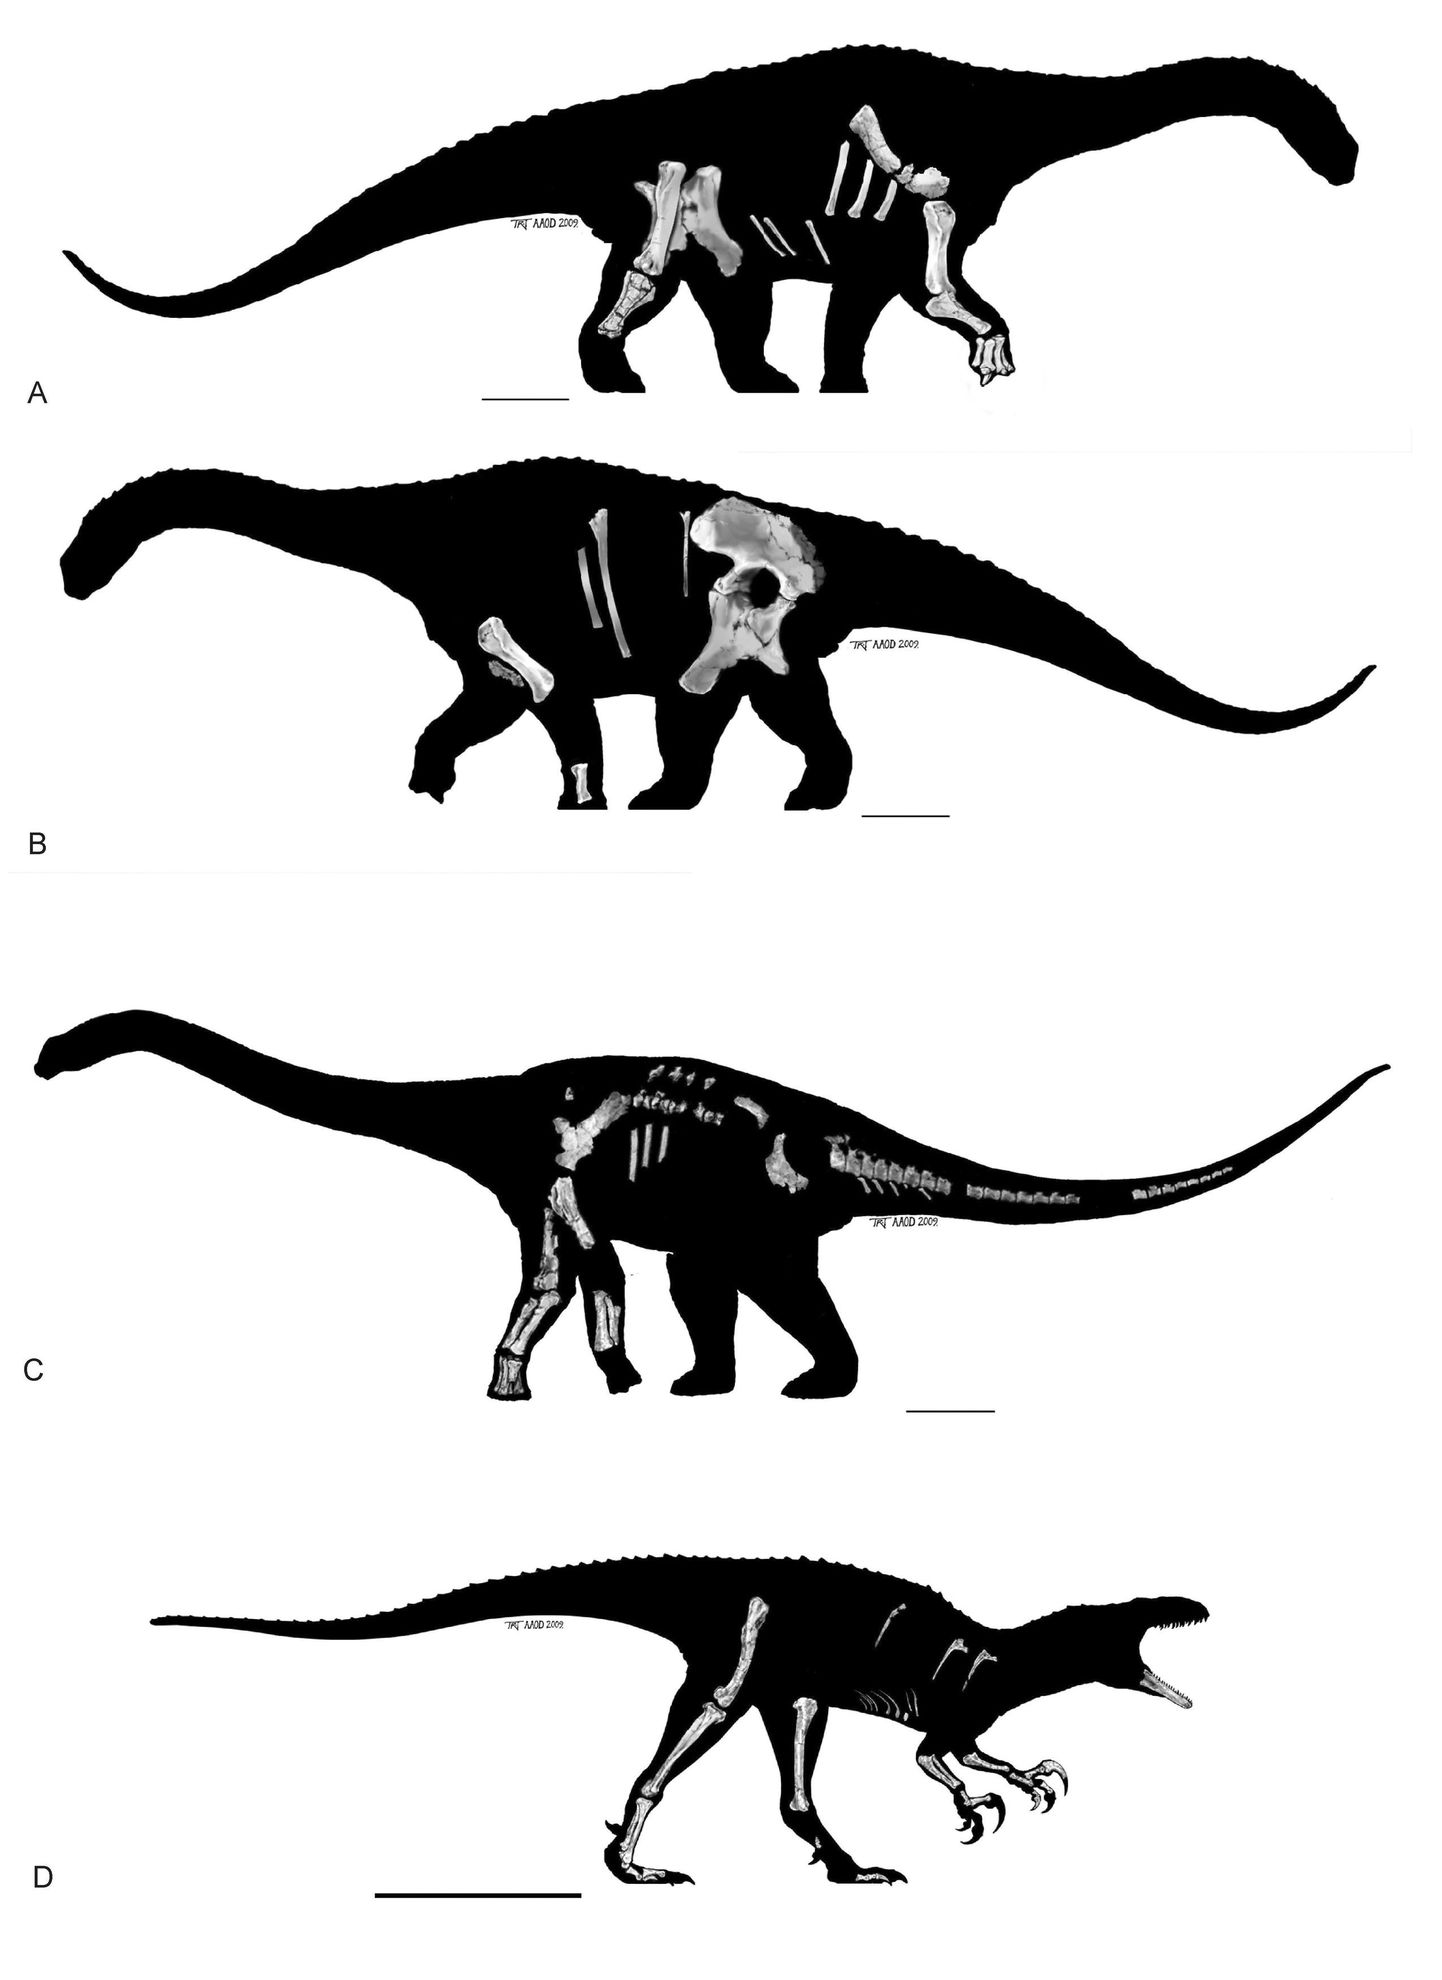 a) ja b) Taimtoiduline diamantinasaurus Matilda
c) Taimtoiduline dinosaurus wintonotitan, hüüdnimega Clancy
c) Lihasööja australovenator, hüüdnimega Banjo.